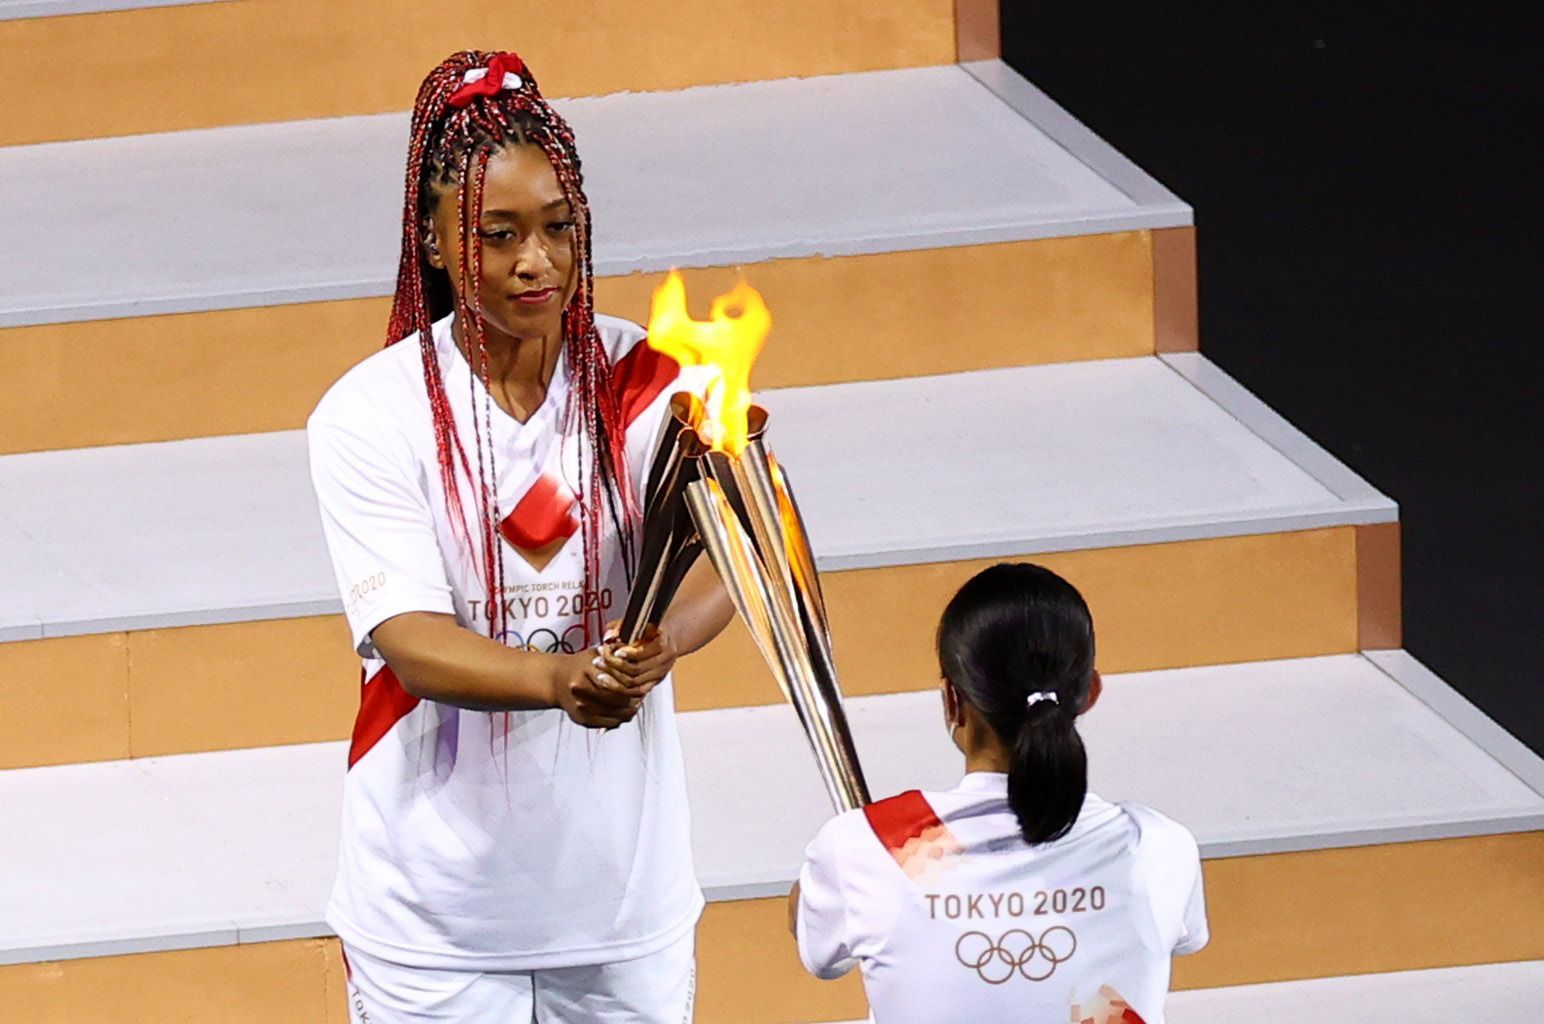 Tenistka Naomi Ósakaová zapaluje olympijský oheň na hrách v Tokiu 2020